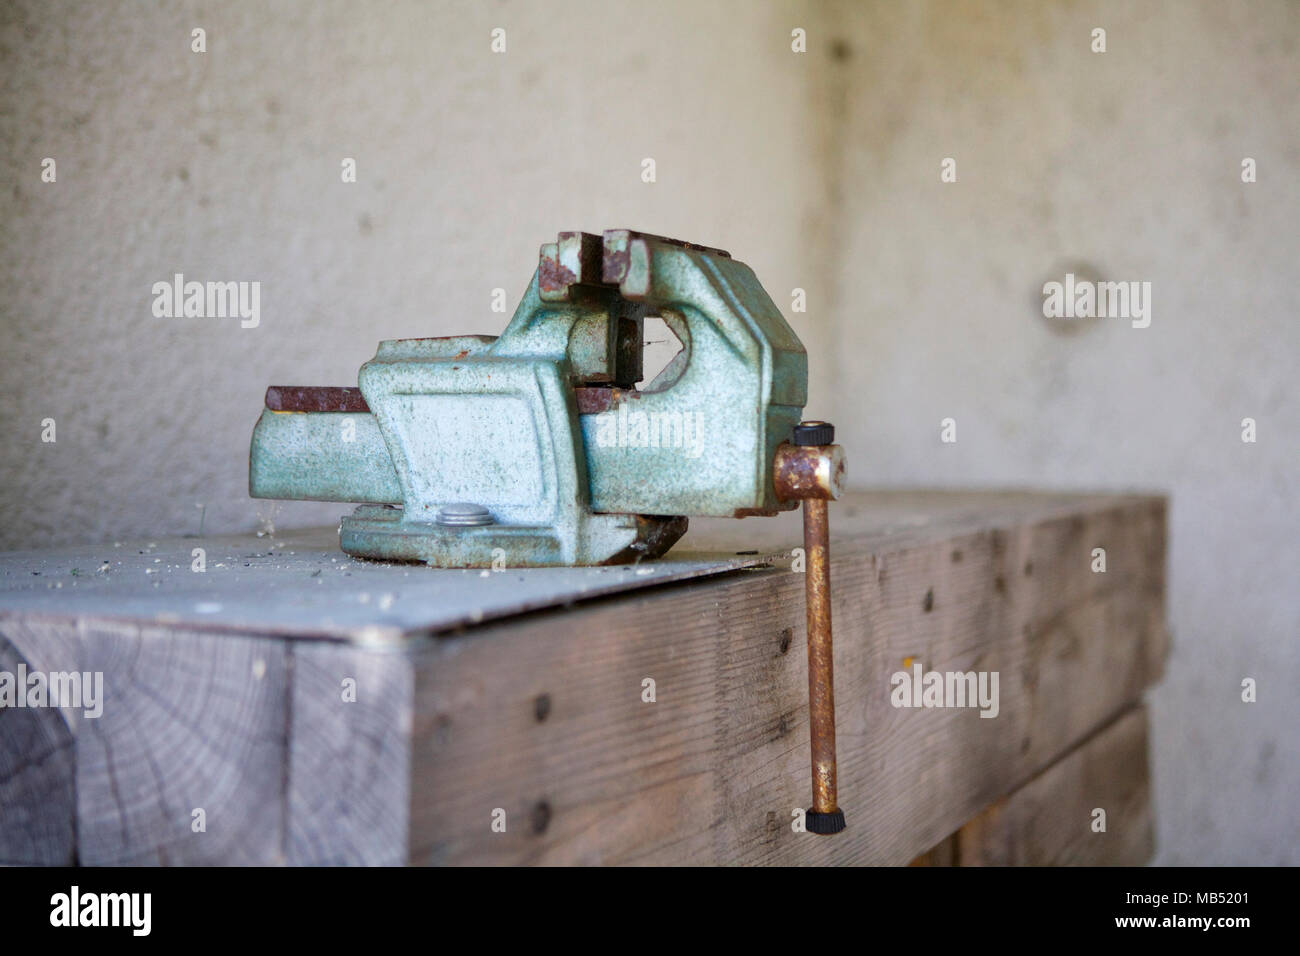 El tornillo de la abrazadera de madera mesa de trabajo Foto de stock